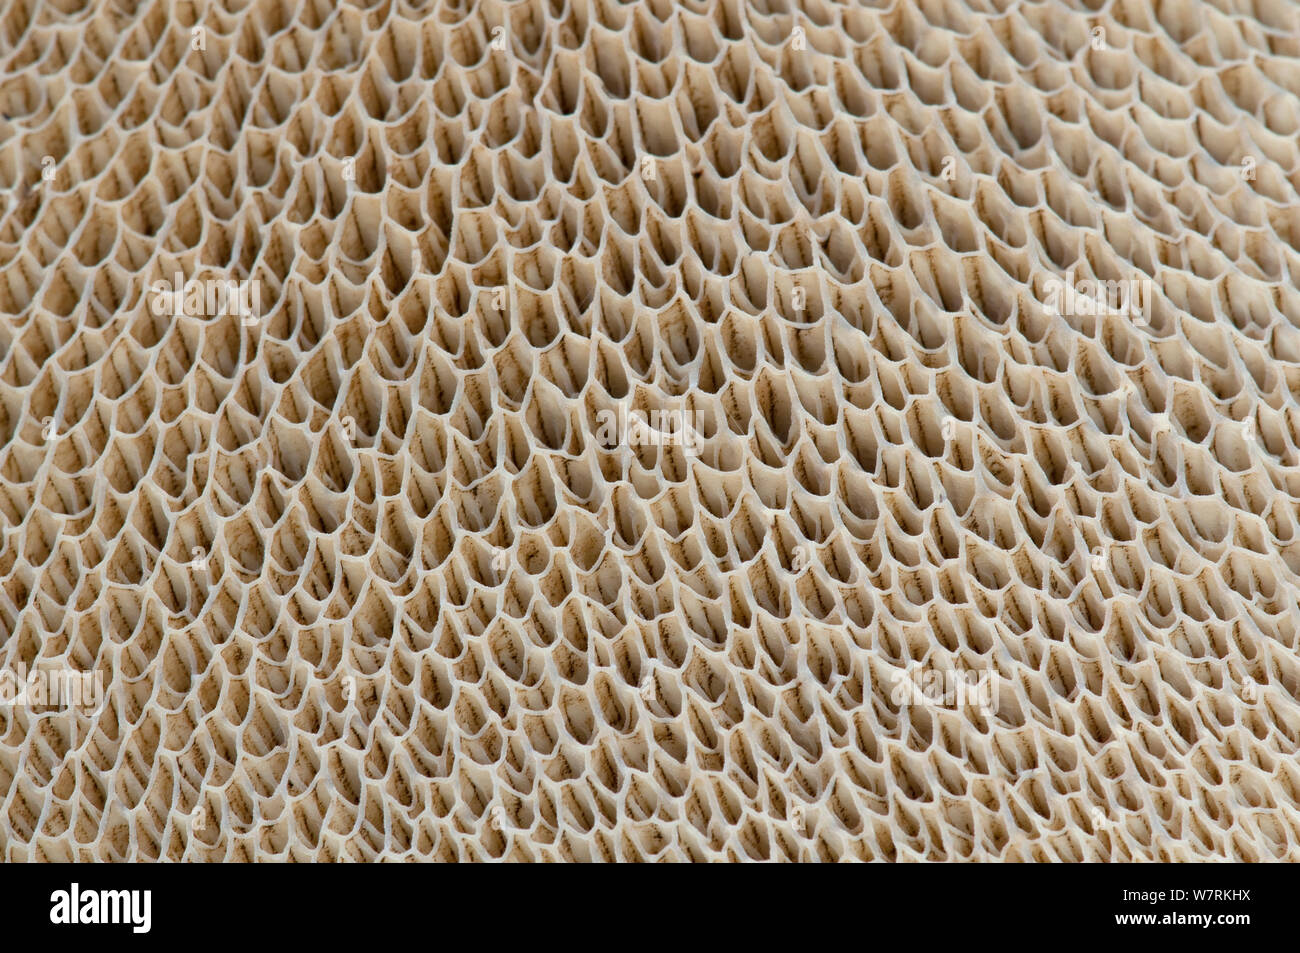 Tubes de spores sur la face inférieure d'une il champignon Bolet (Boletus), Surrey, Angleterre, Royaume-Uni, novembre. Banque D'Images